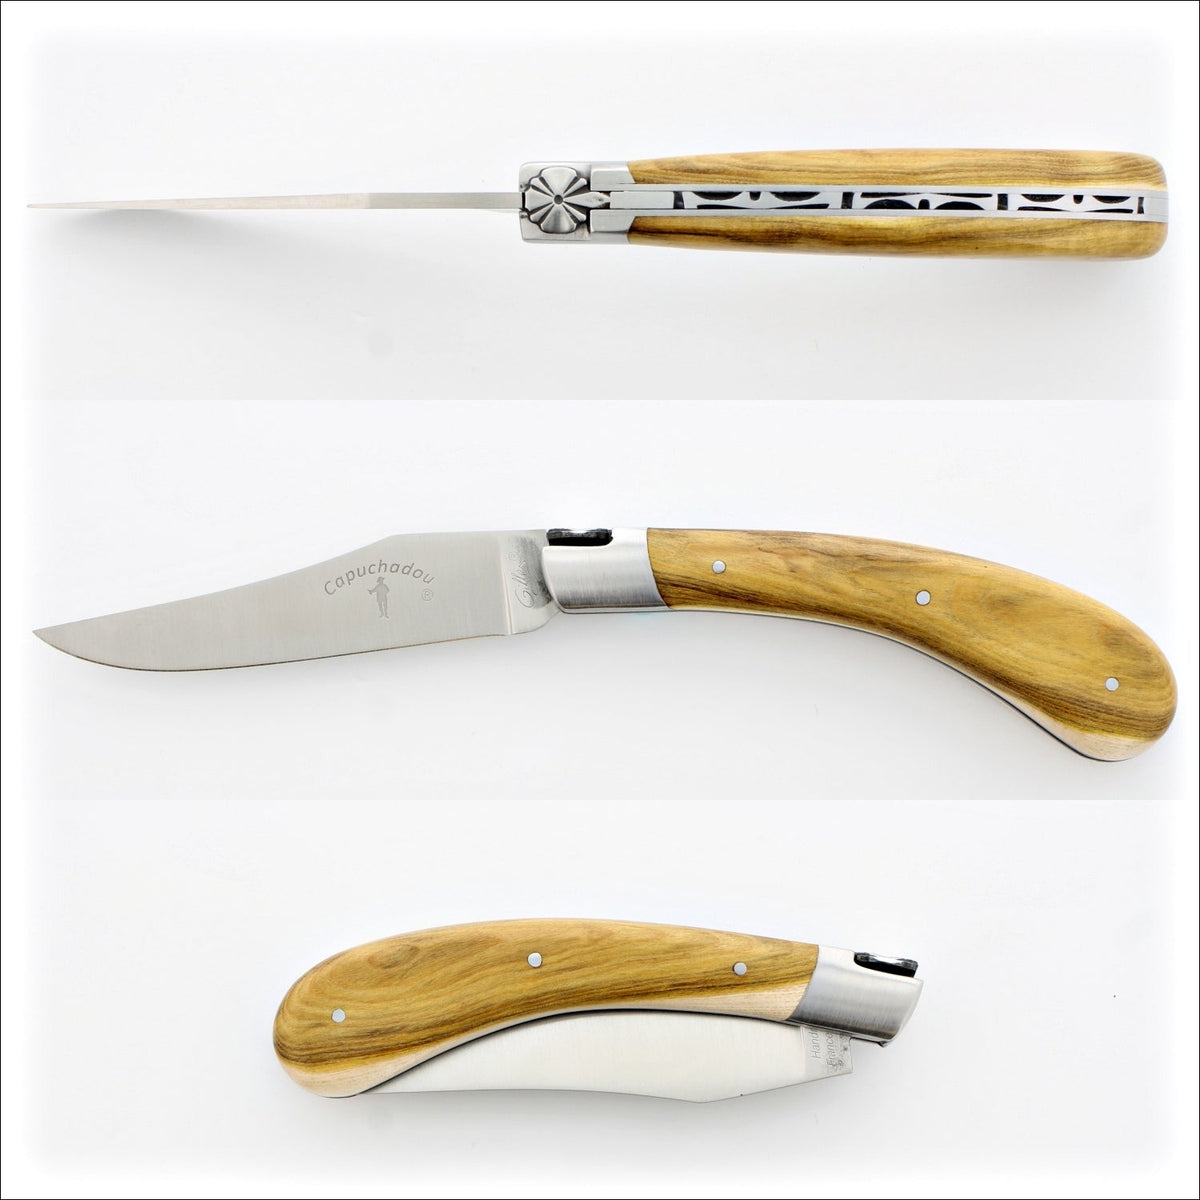 Capuchadou 12 cm Classic Folding Knife - Pistachio